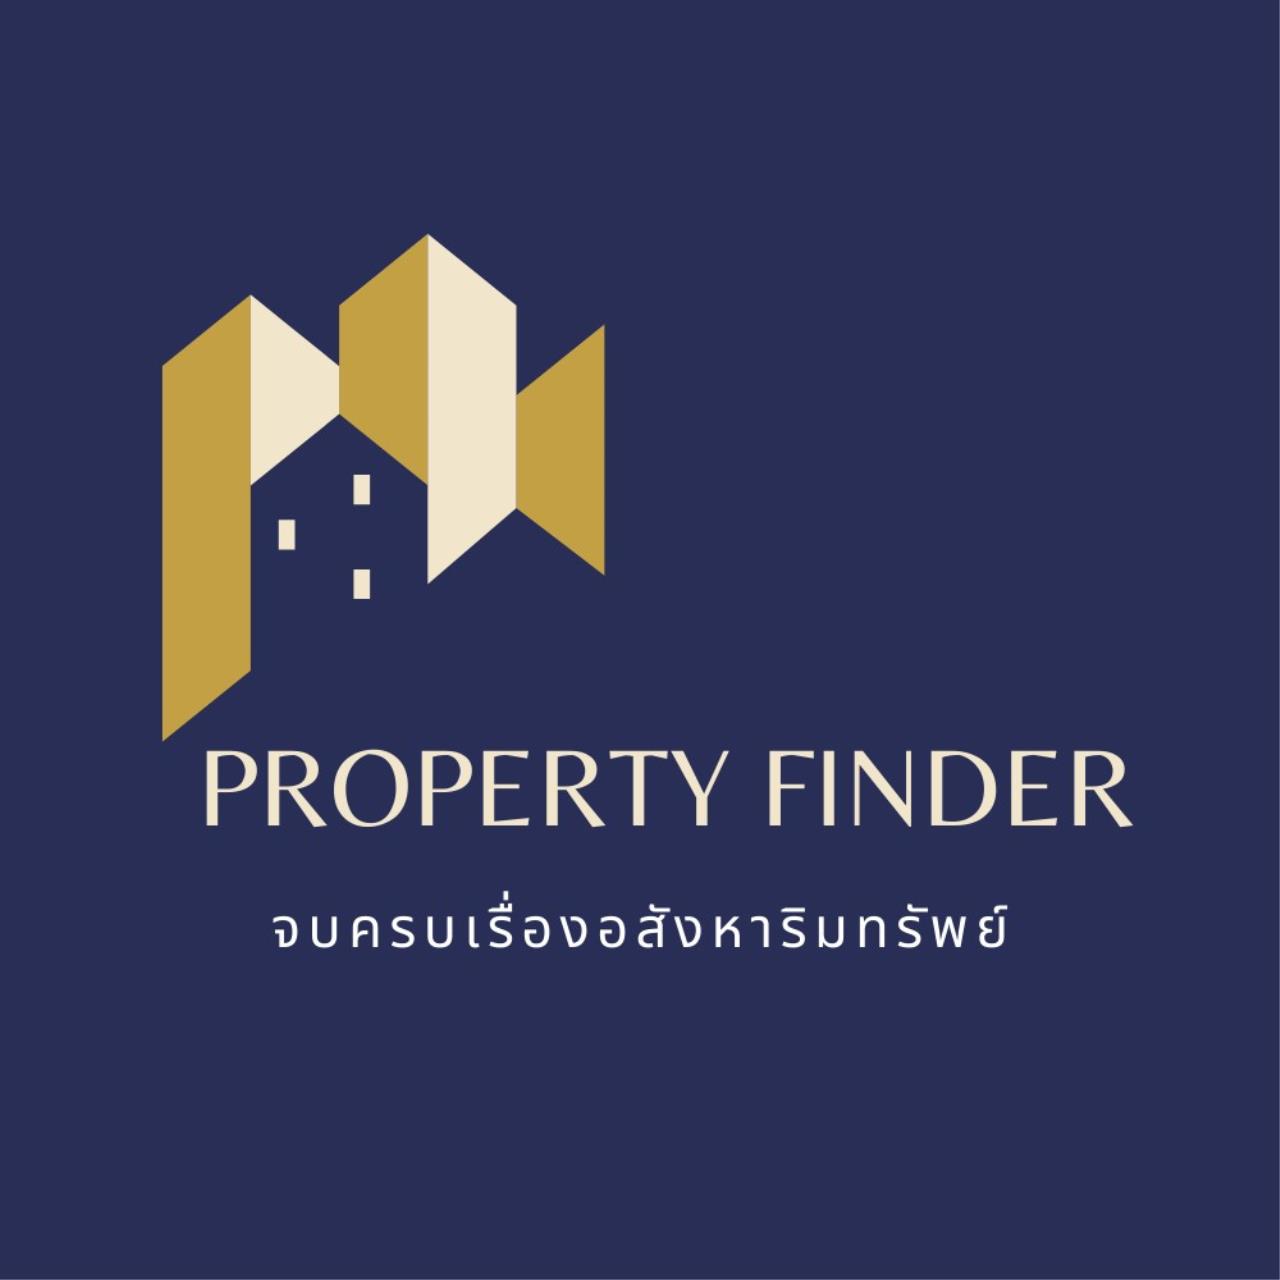 PROPERTY FINDER logo